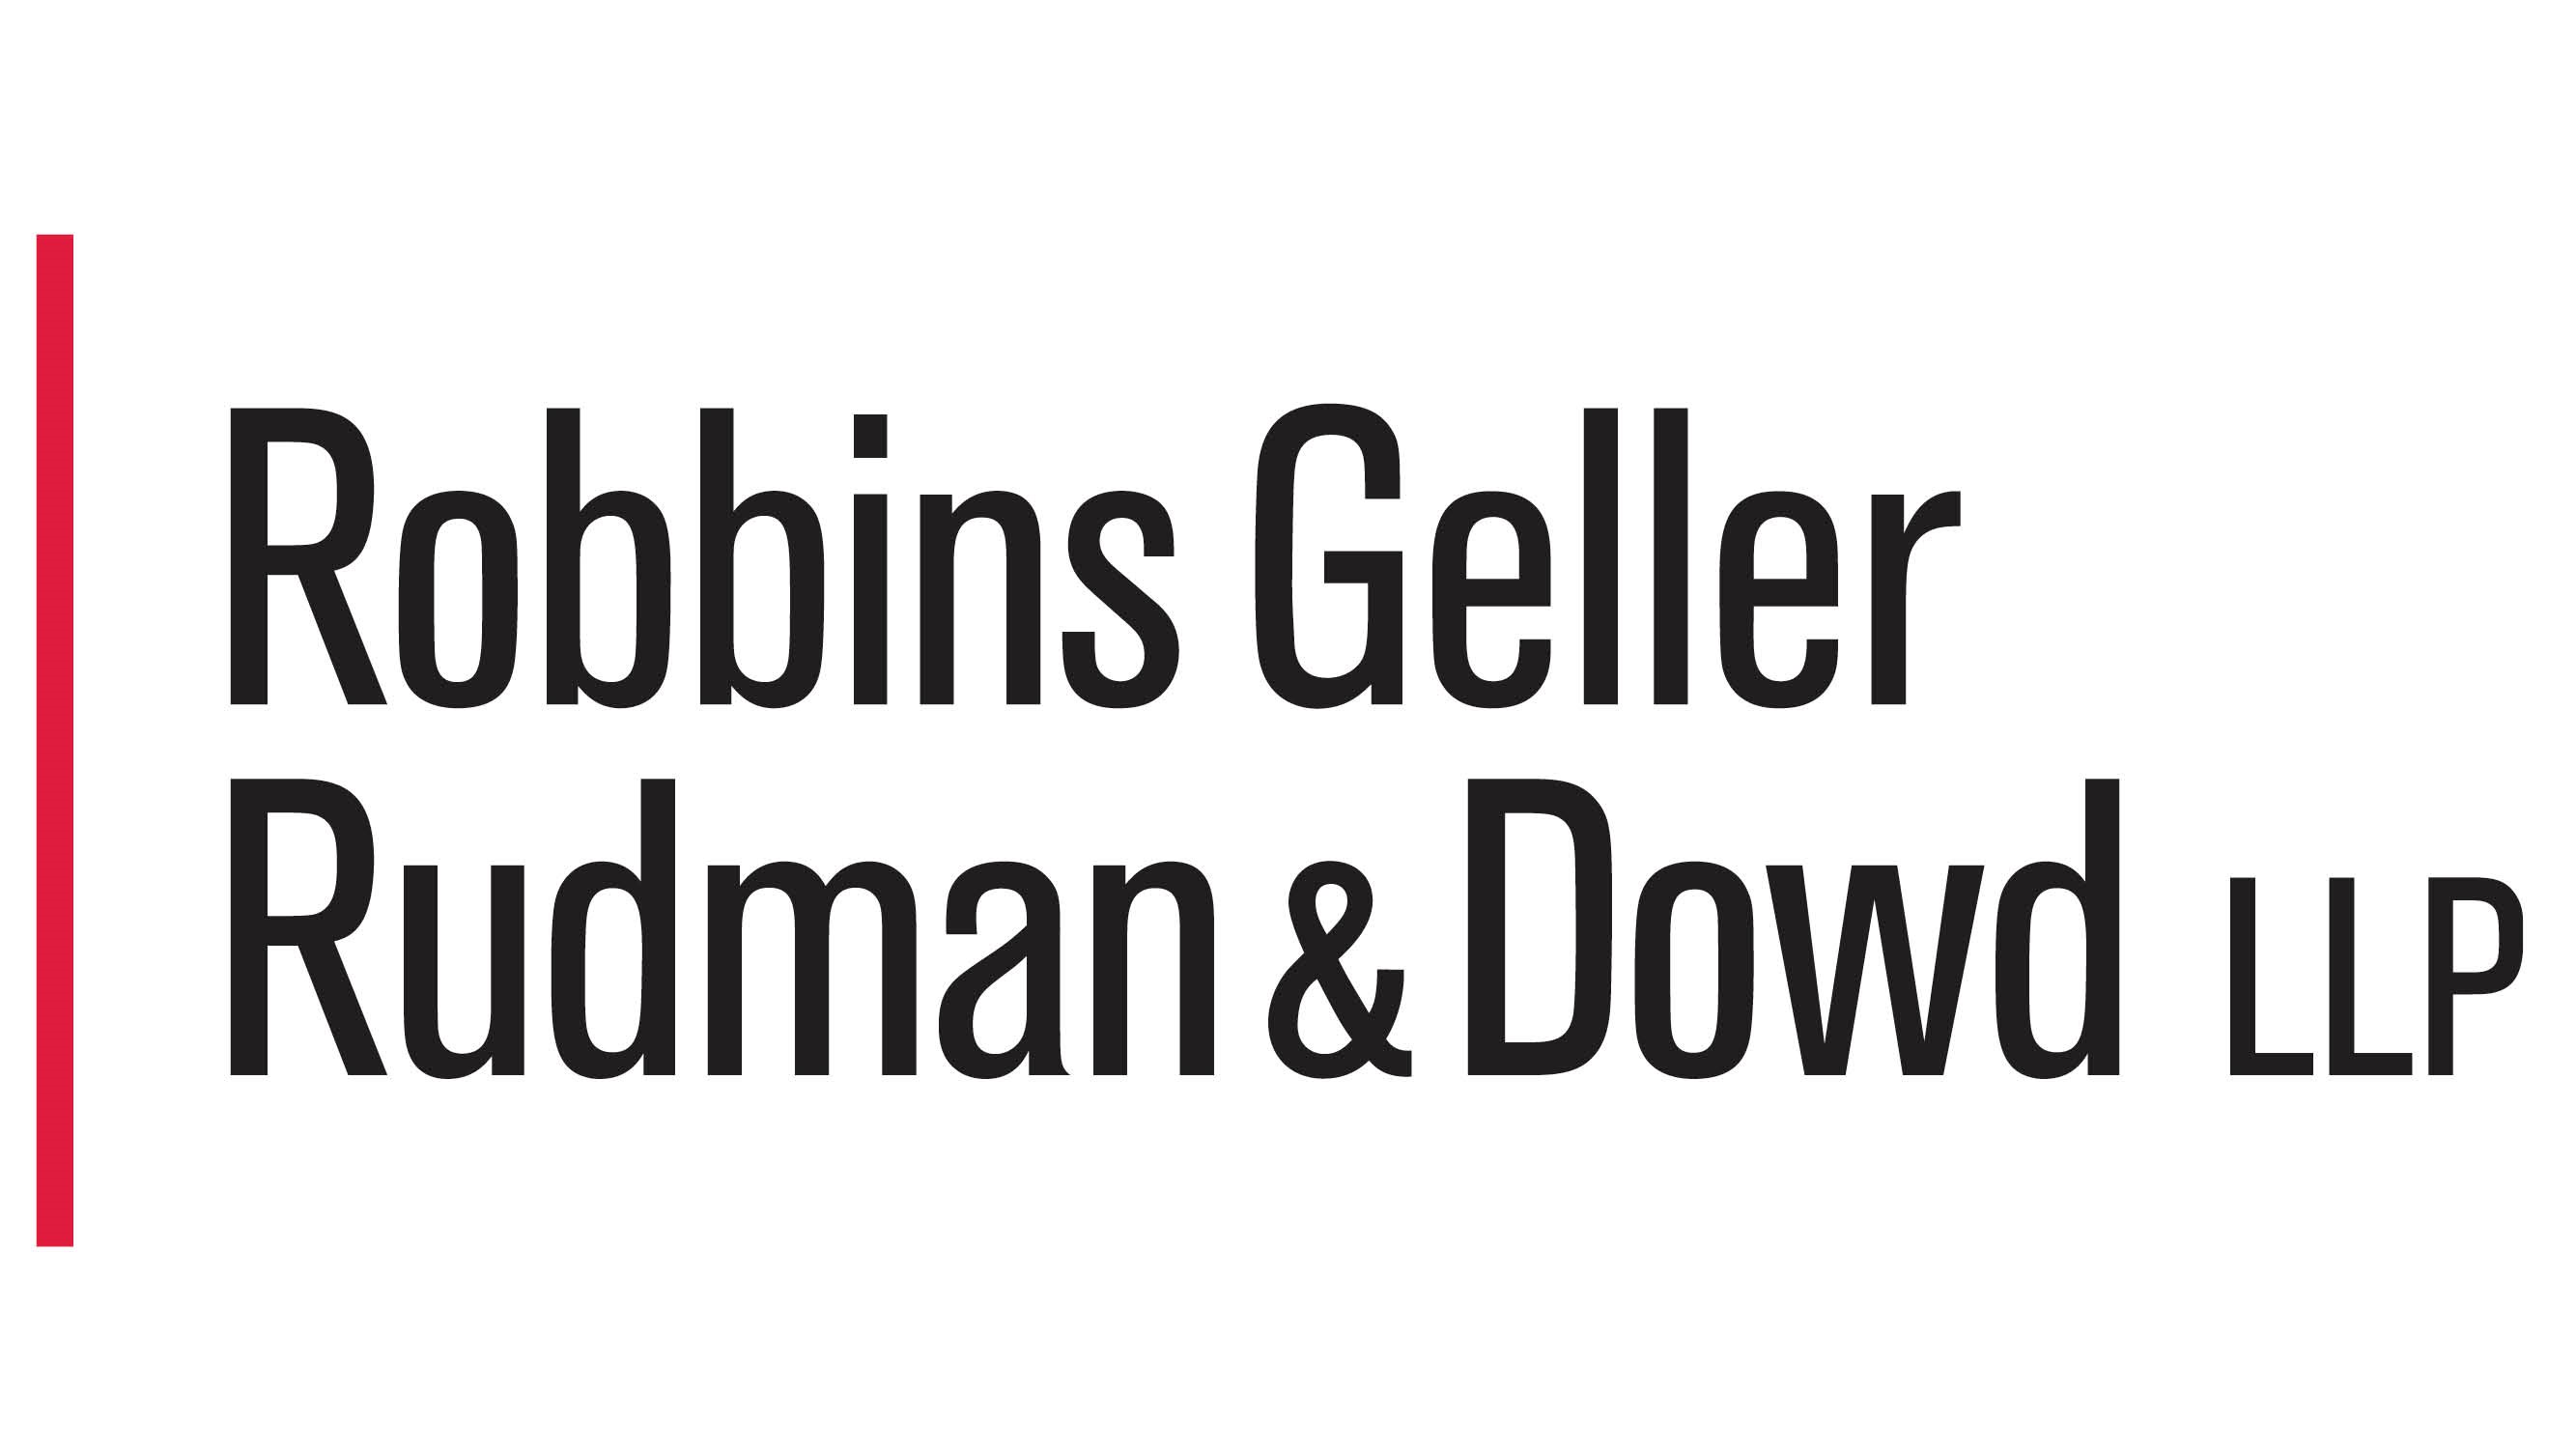 Robbins Geller Rudman & Dowd LLP, Sunday, December 19, 2021, Press release picture